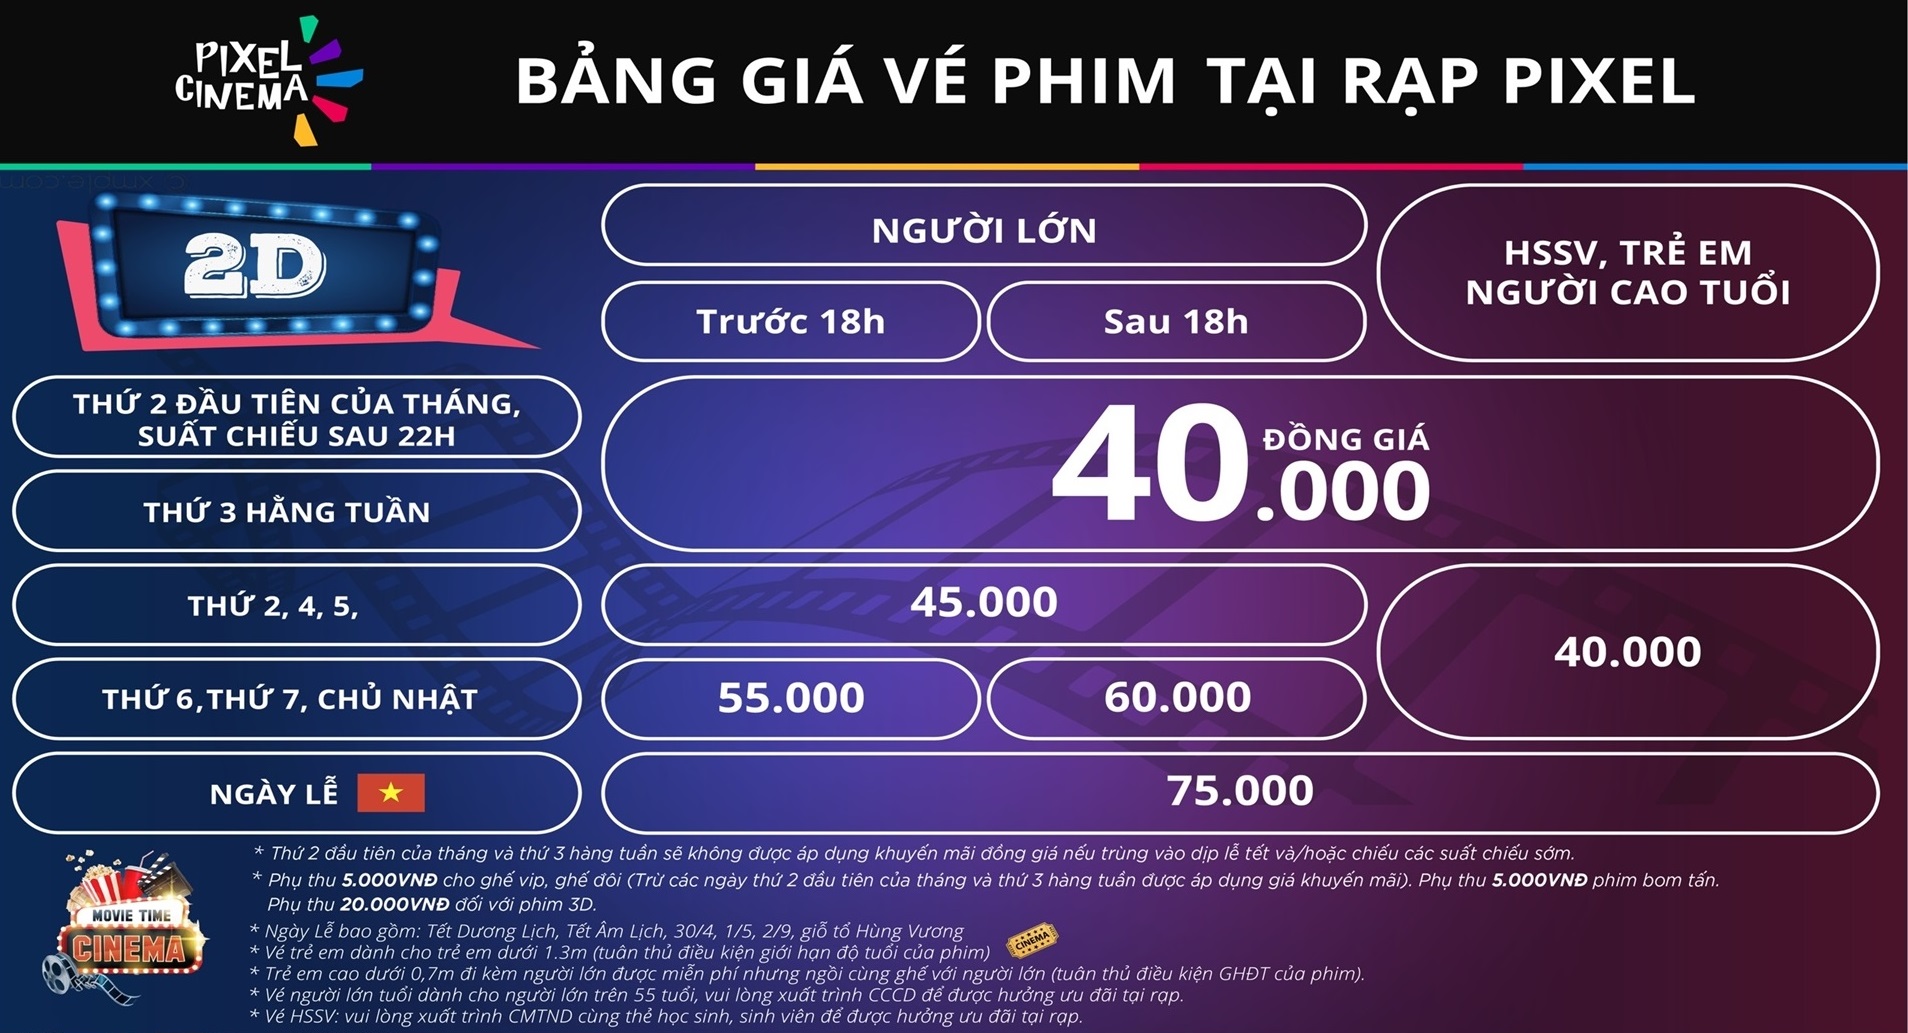 Bảng giá vé rạp phim Pixel Thái Nguyên